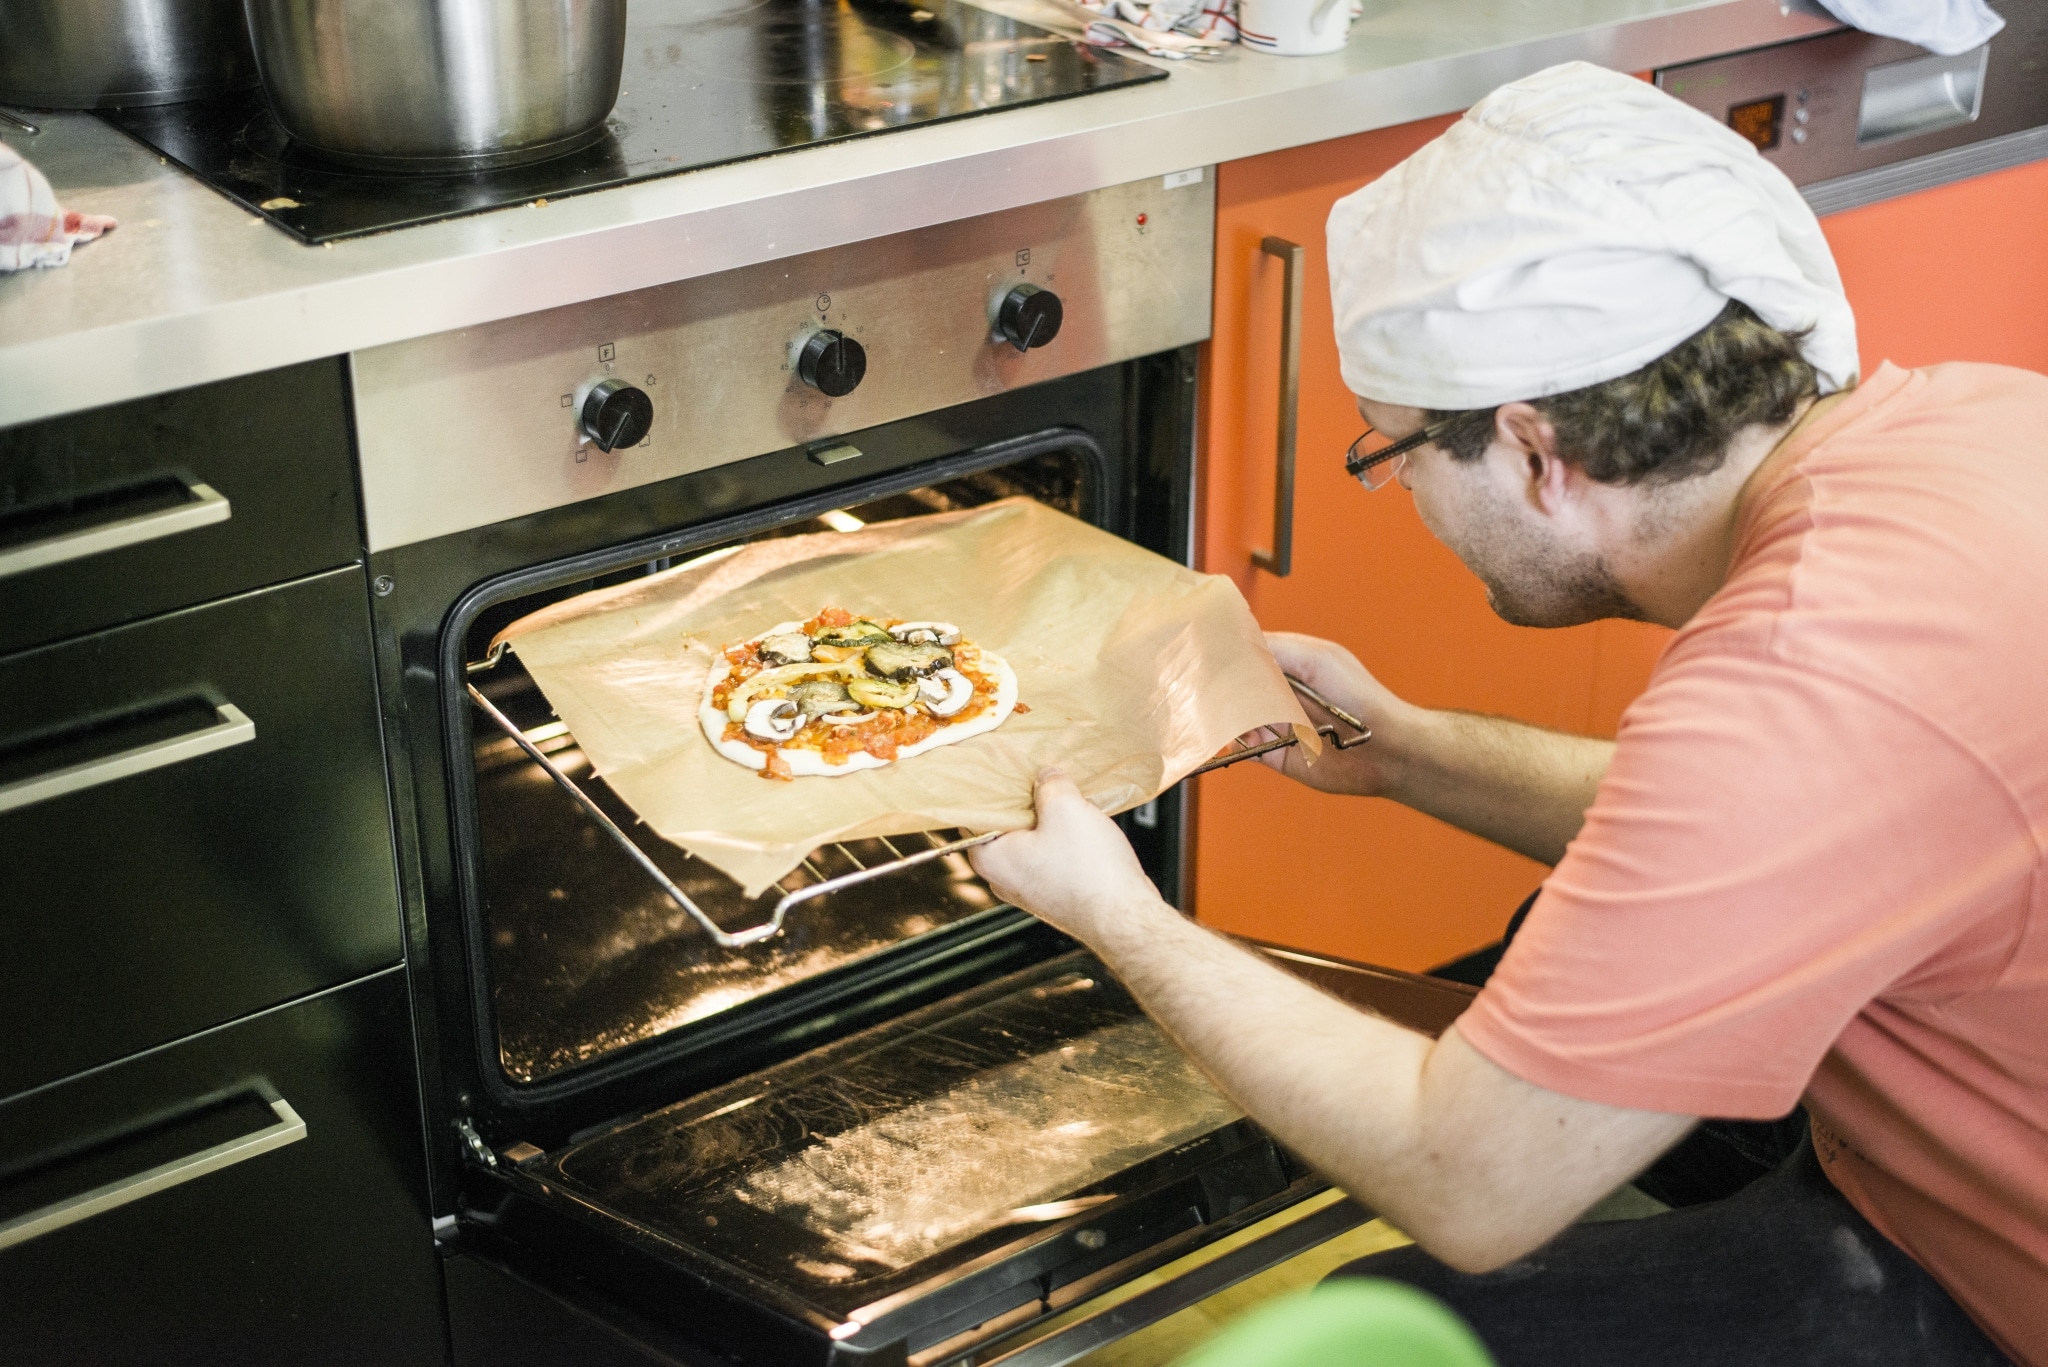 Kunde schiebt Pizza ins Backrohr